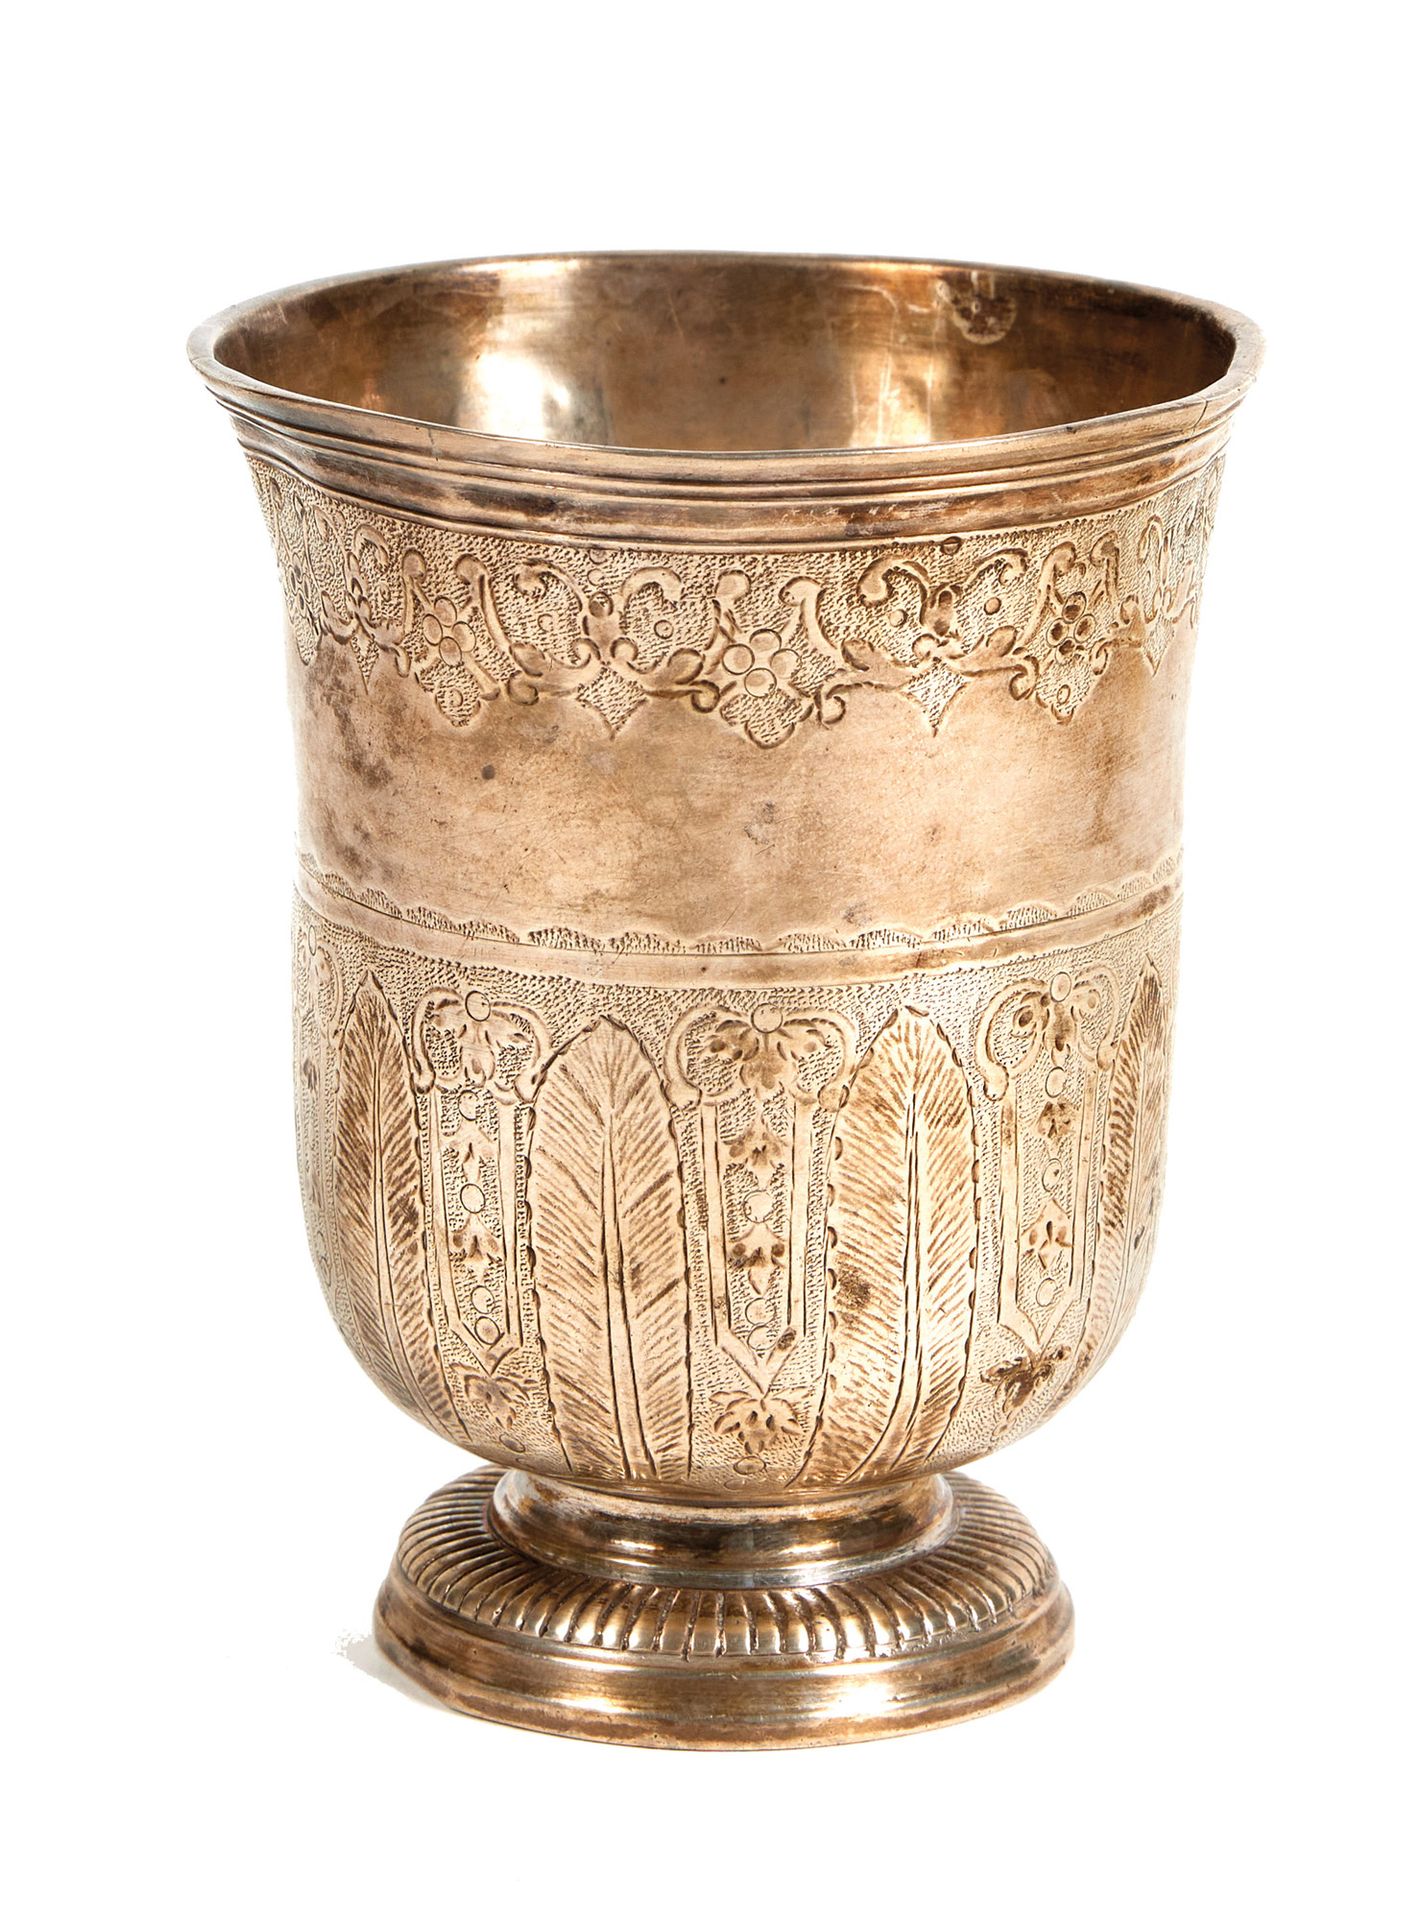 TIMBALE TULIPE EN ARGENT 银色的郁金香杯

巴黎，1724年，部分可辨认的镀金大师

放在一个镶有石榴裙边的基座上，主体刻有长矛、摄政时&hellip;